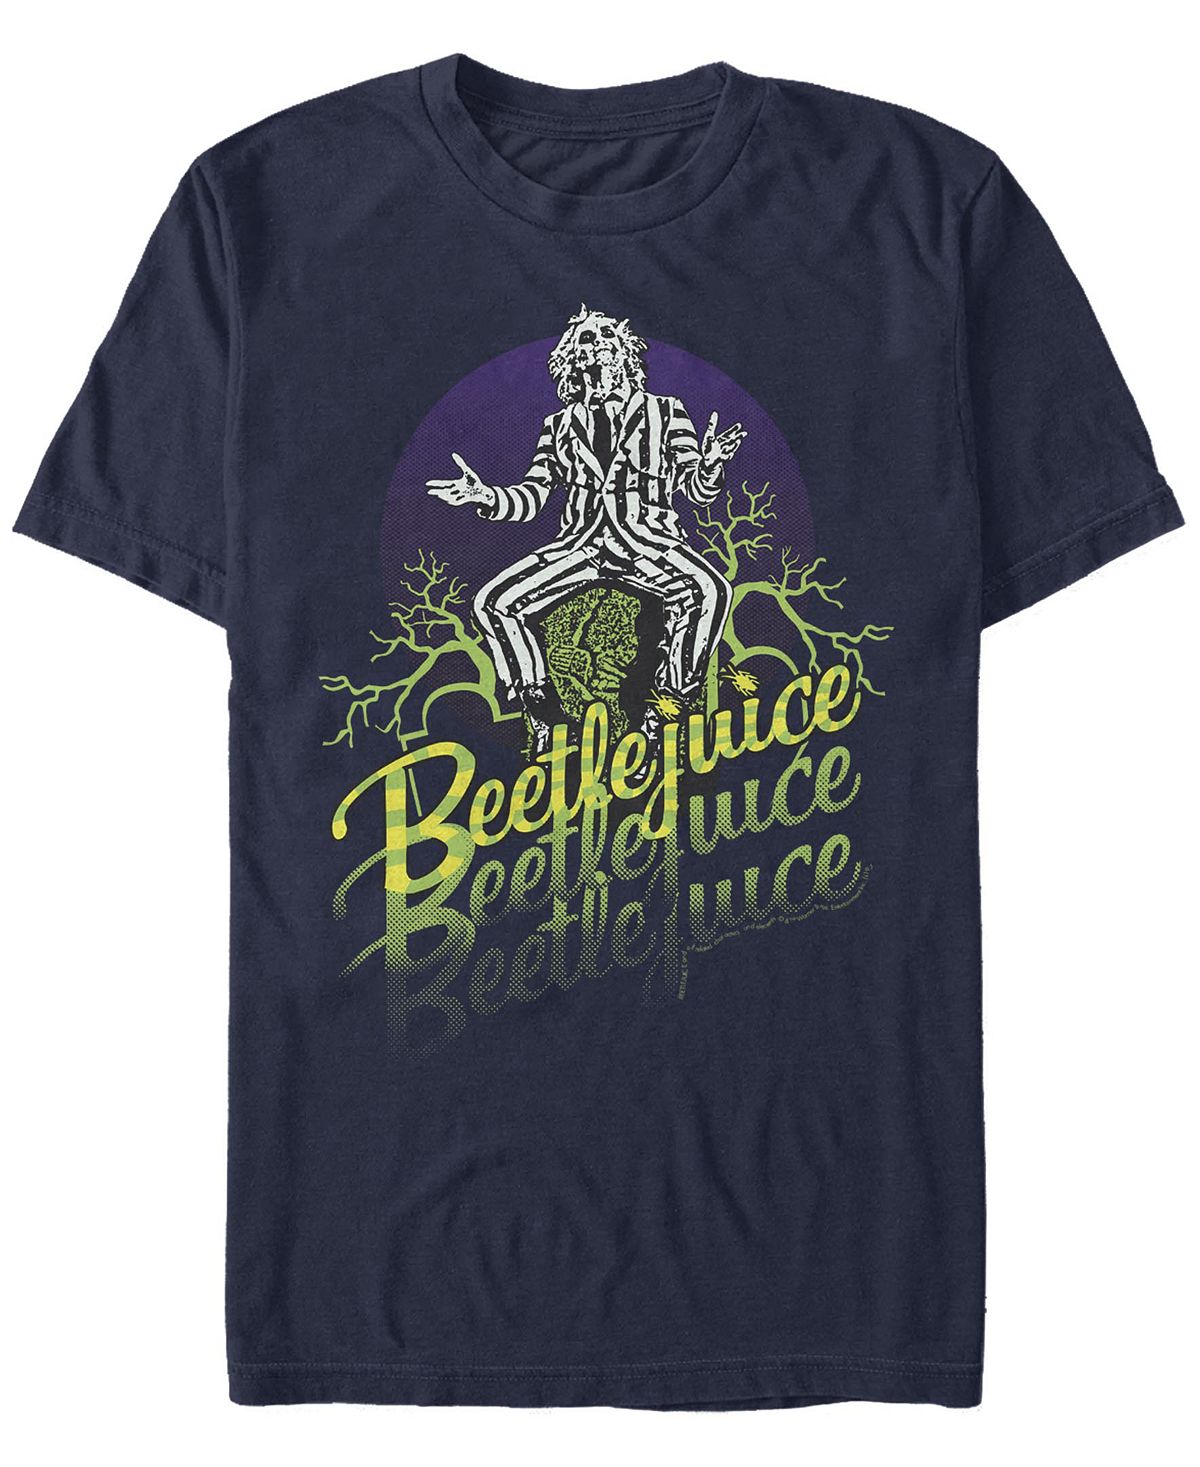 цена Мужская футболка с короткими рукавами beetlejuice beetlejuice stacked Fifth Sun, синий